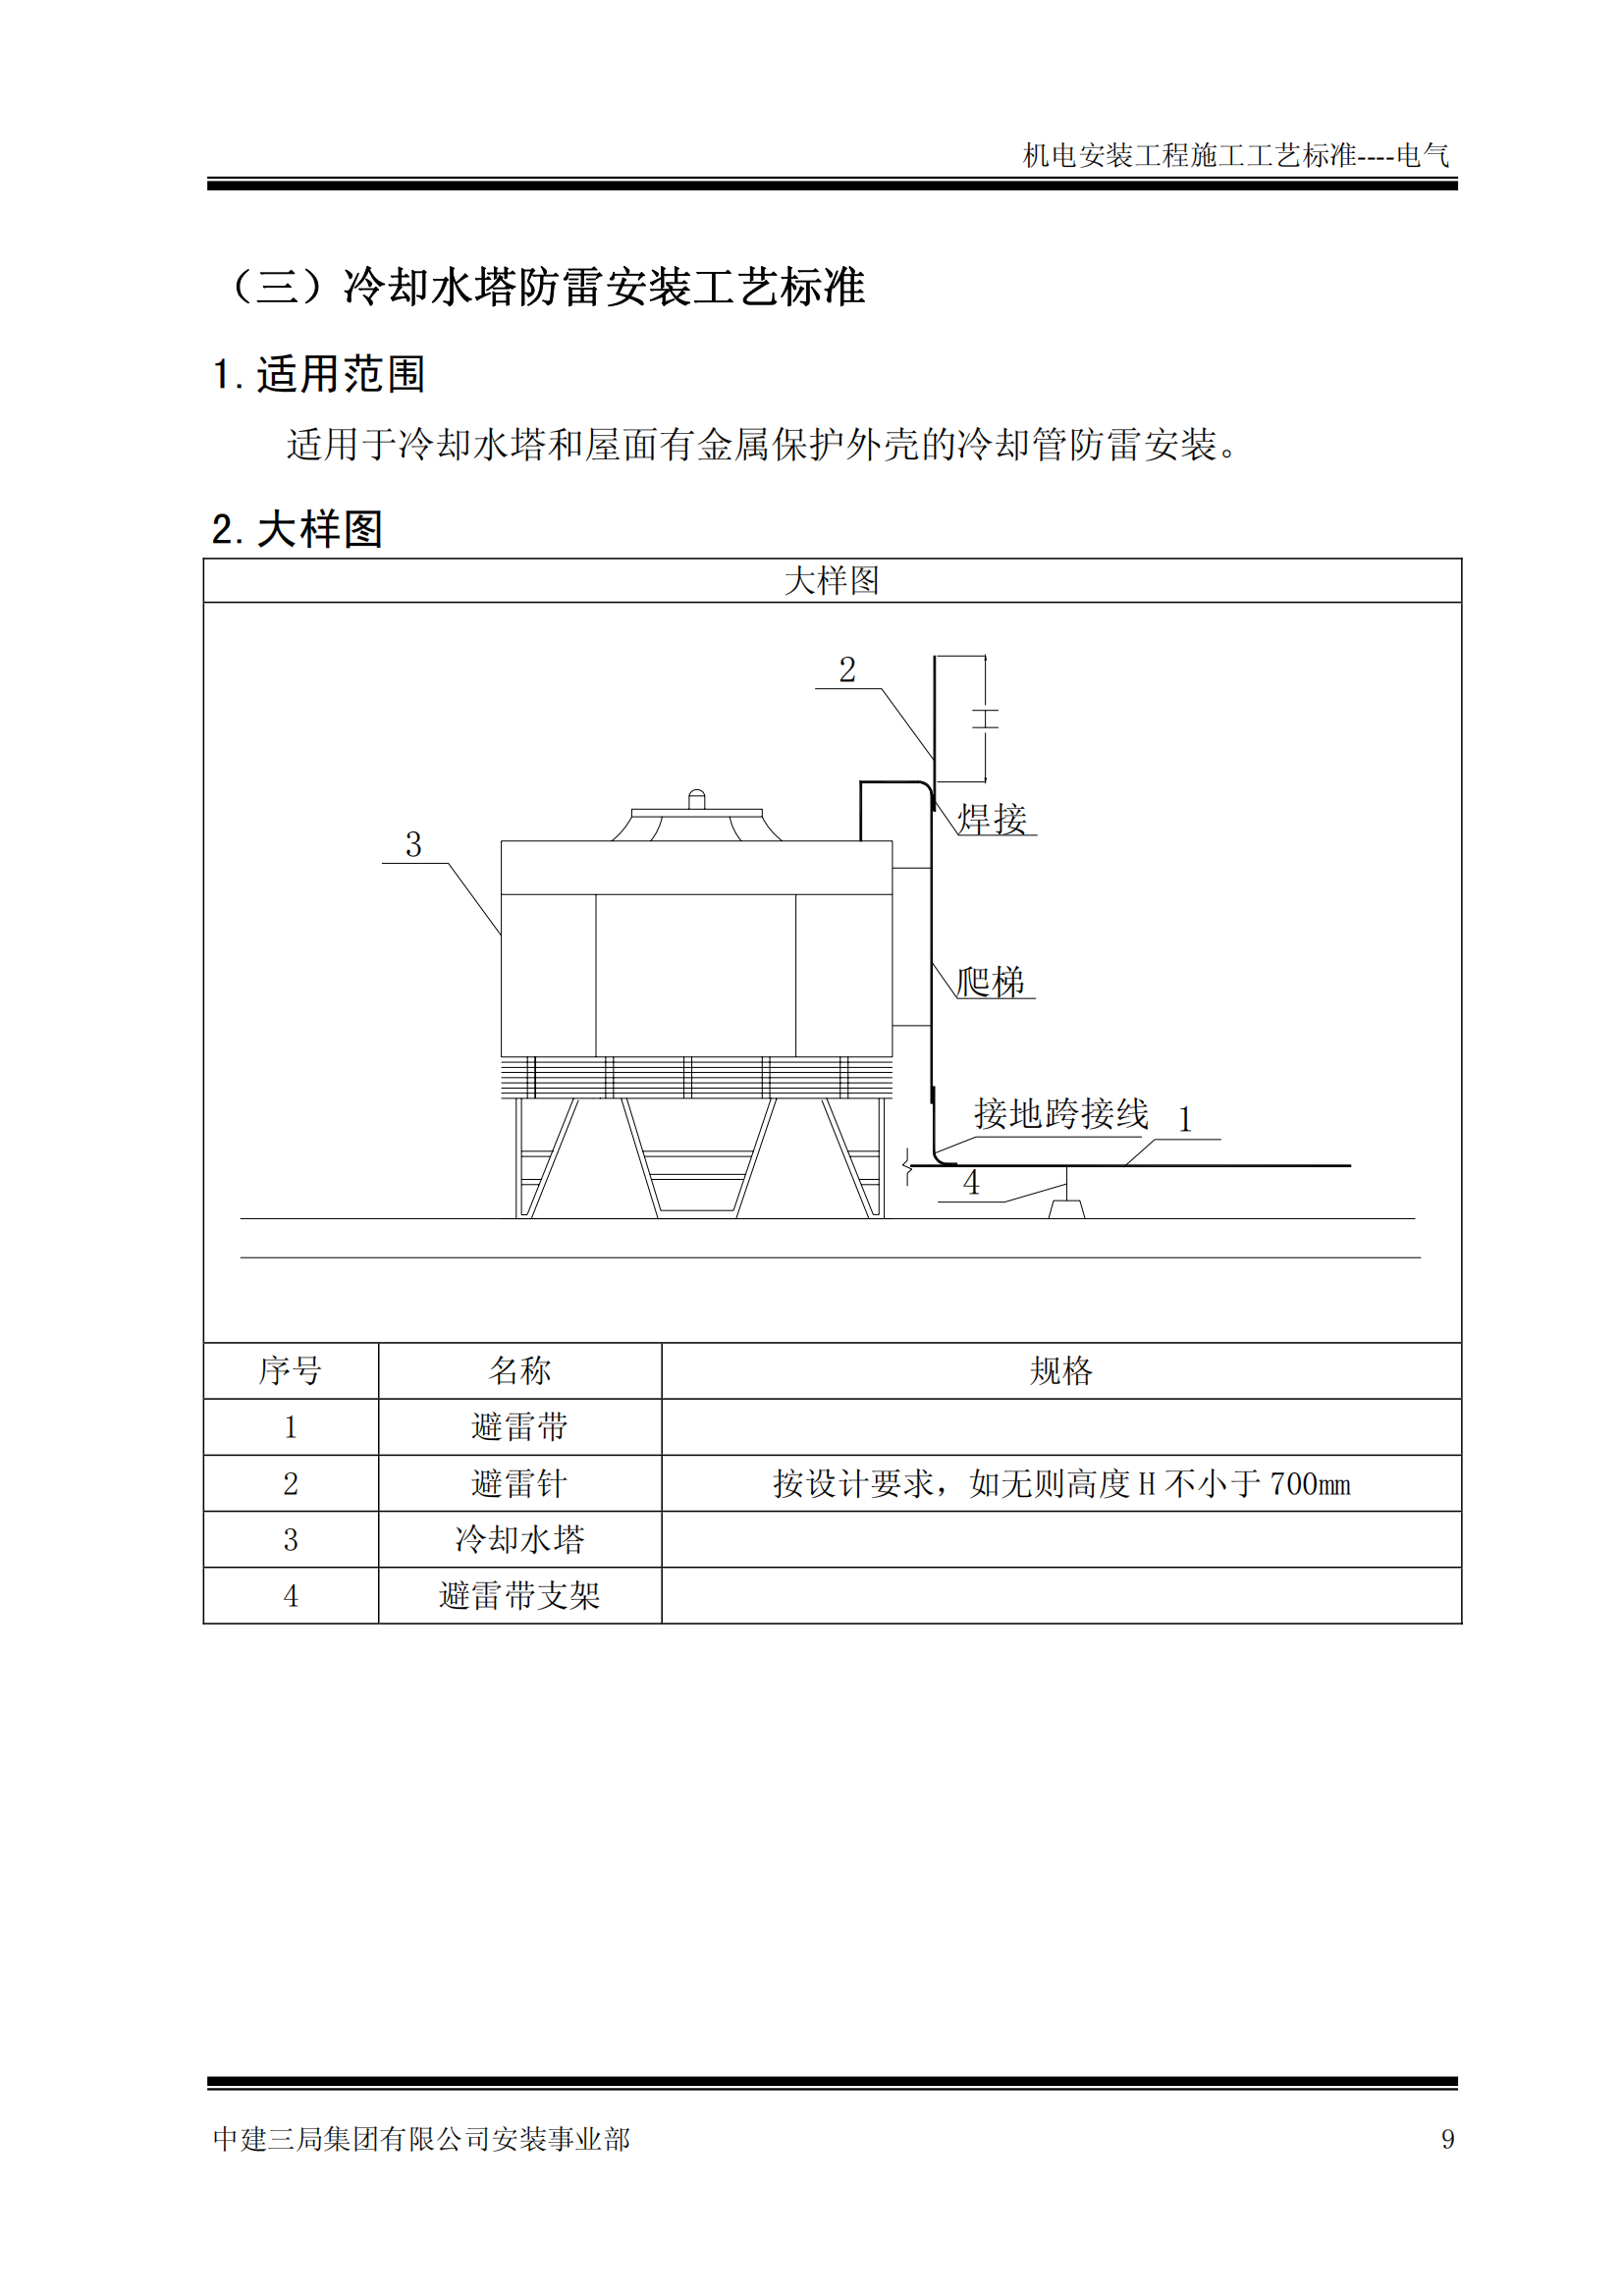 中建机电安装工程施工工艺标准-电气篇插图(12)